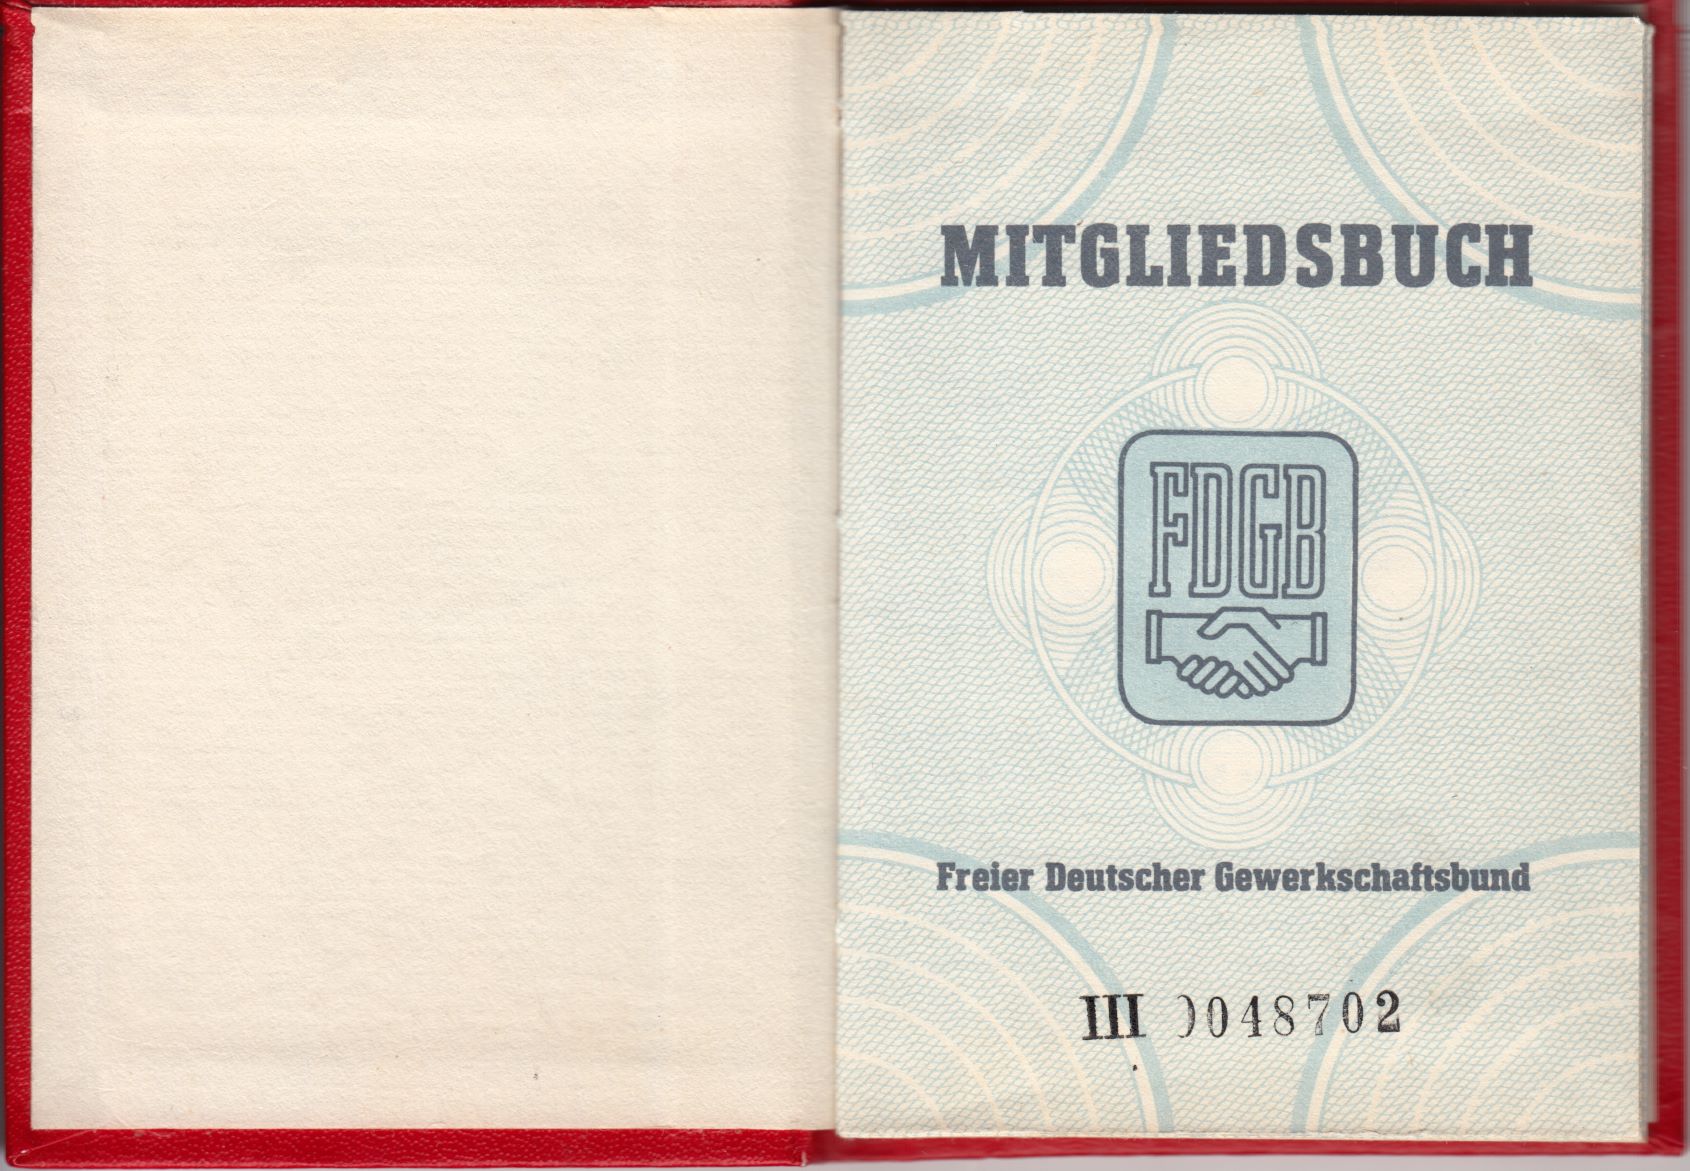 Mitgliedsausweis des Freien Deutschen Gewerkschaftsbundes 